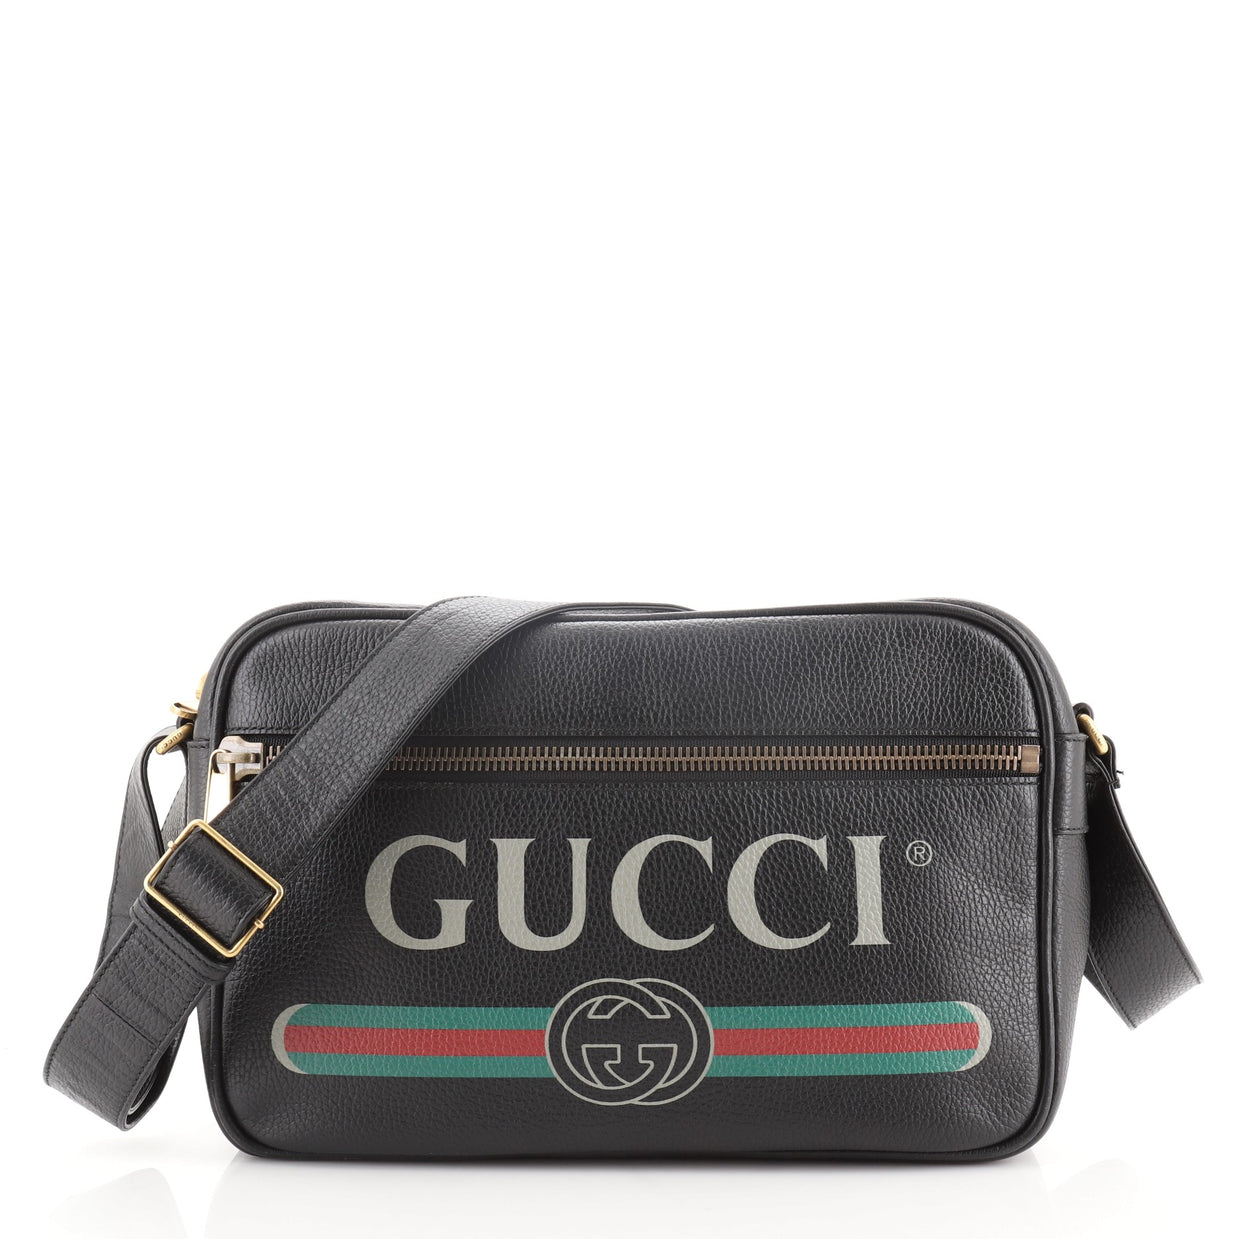 Gucci Logo Shoulder Bag Printed Leather Black 669752